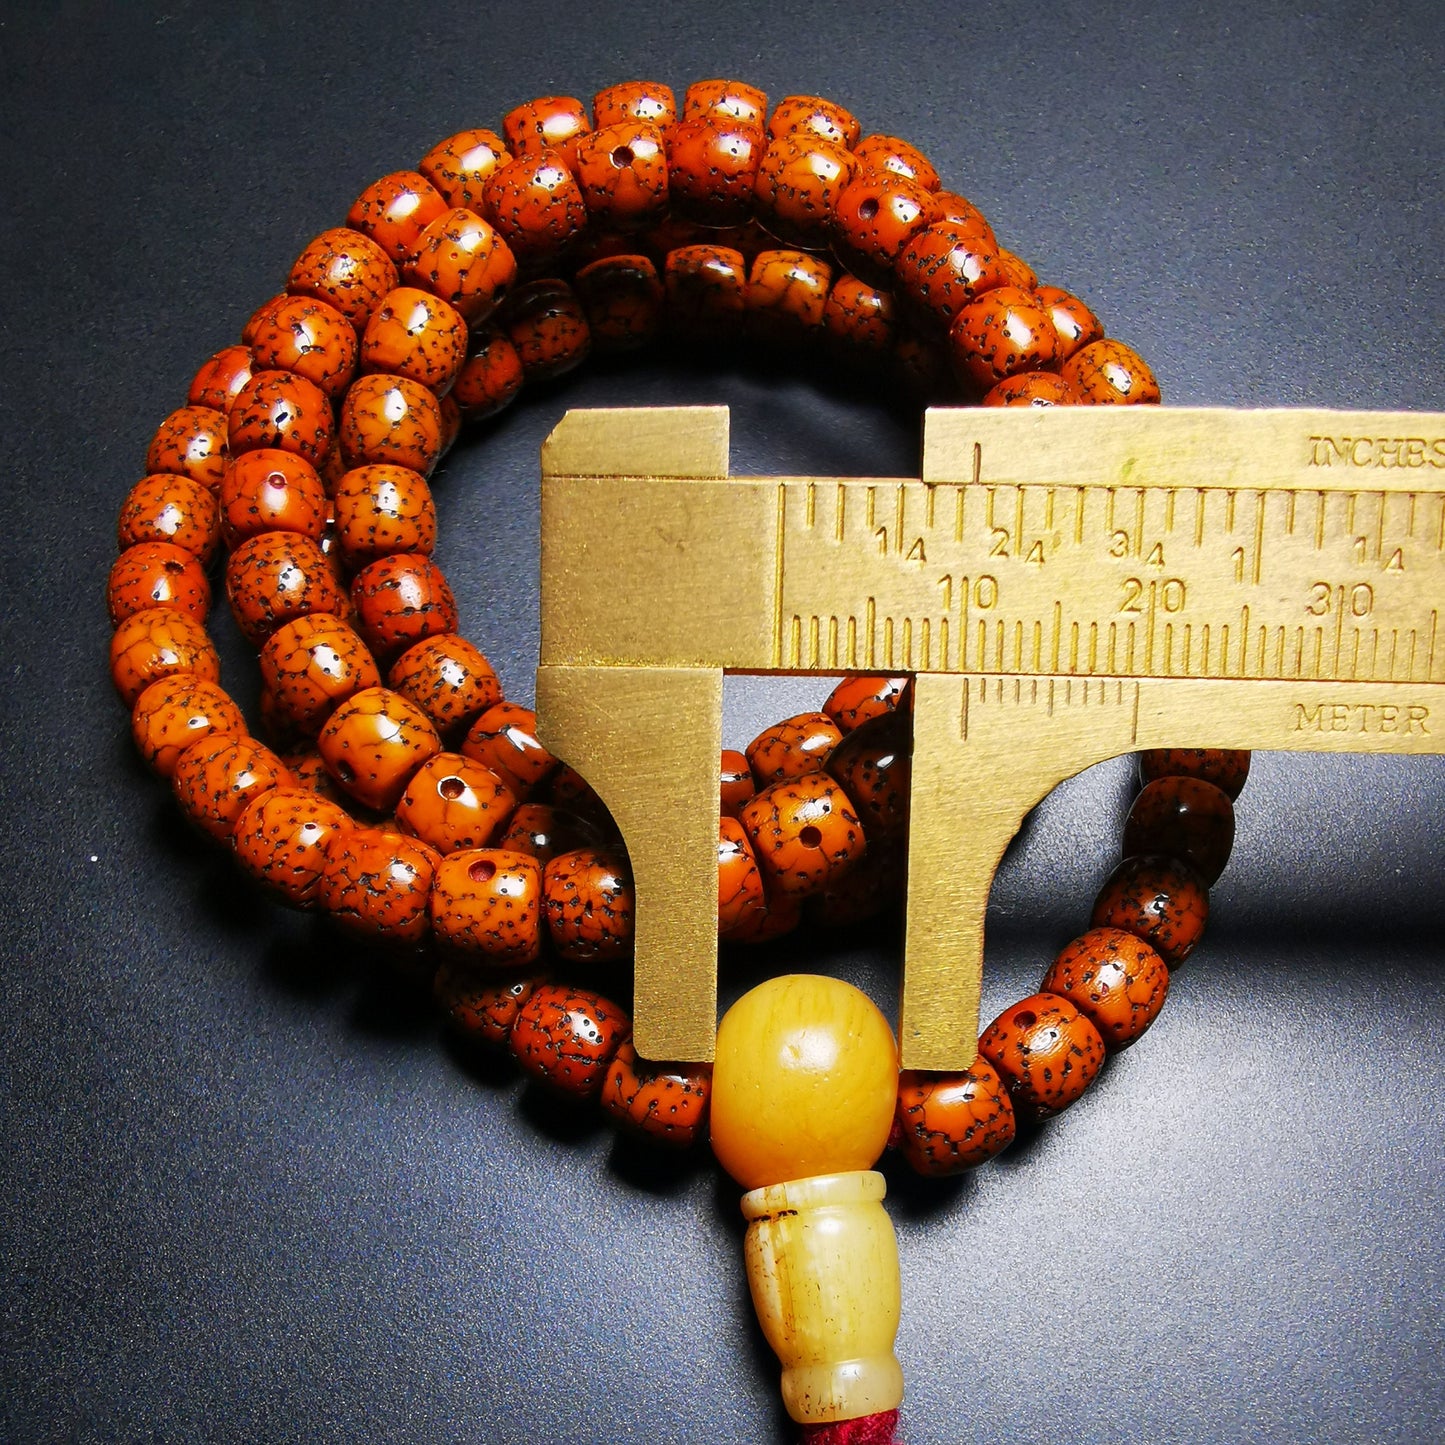 Gandhanra Old Tibetan Mala Beads Necklace, Star Moon Bodhi Seed Prayer Beads Bracelet